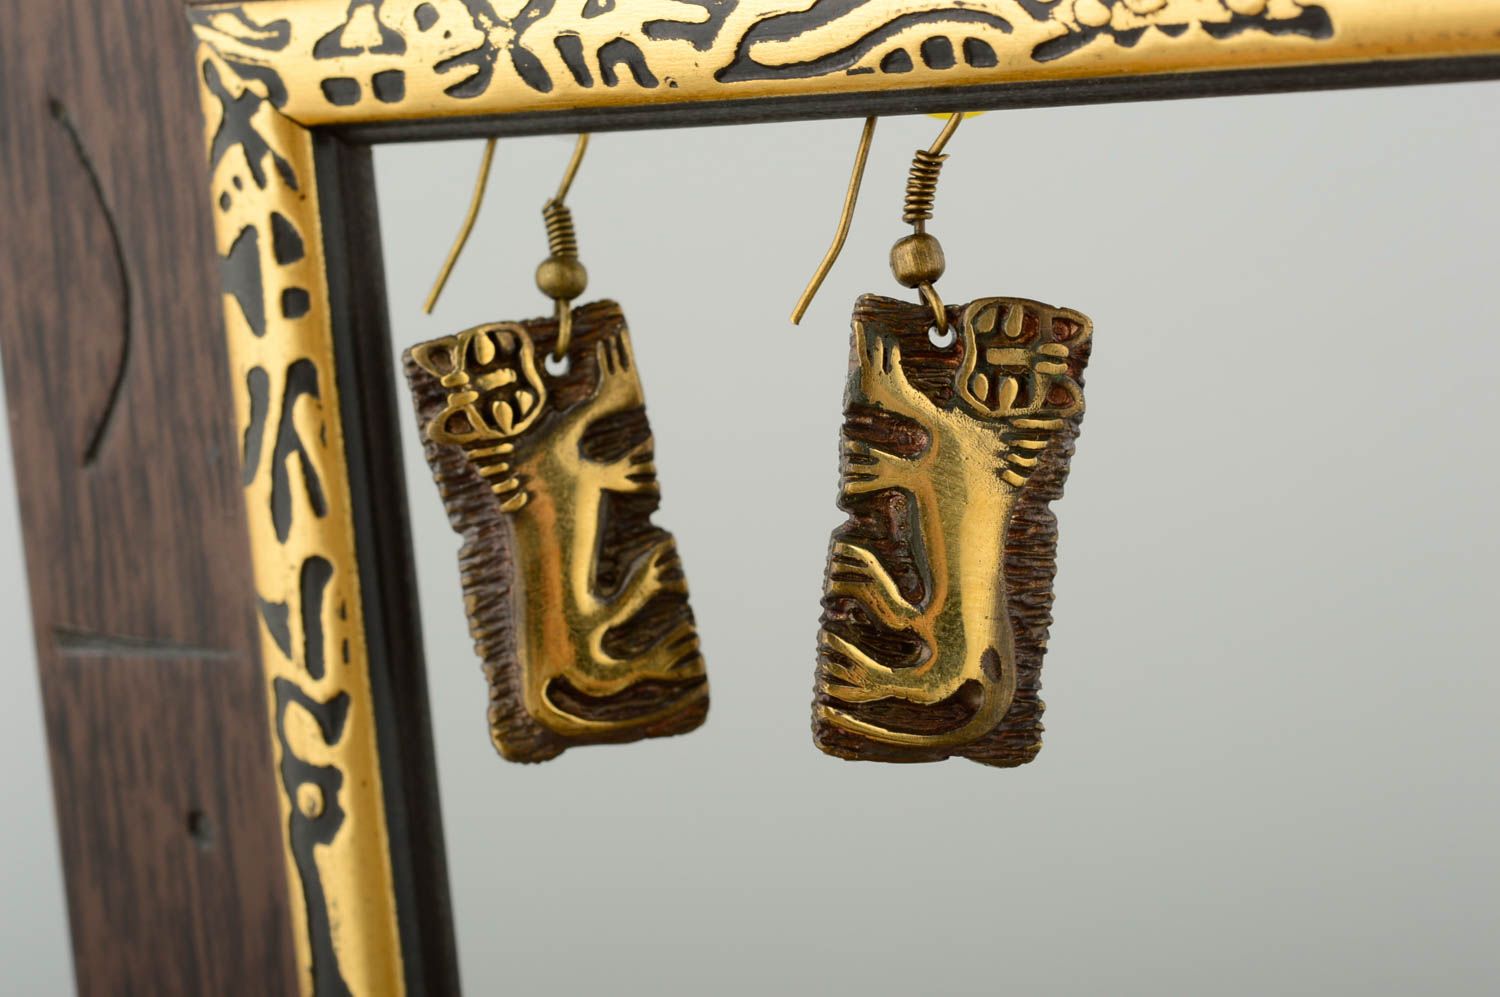 Unusual handmade metal earrings handmade accessories cool jewelry designs photo 1